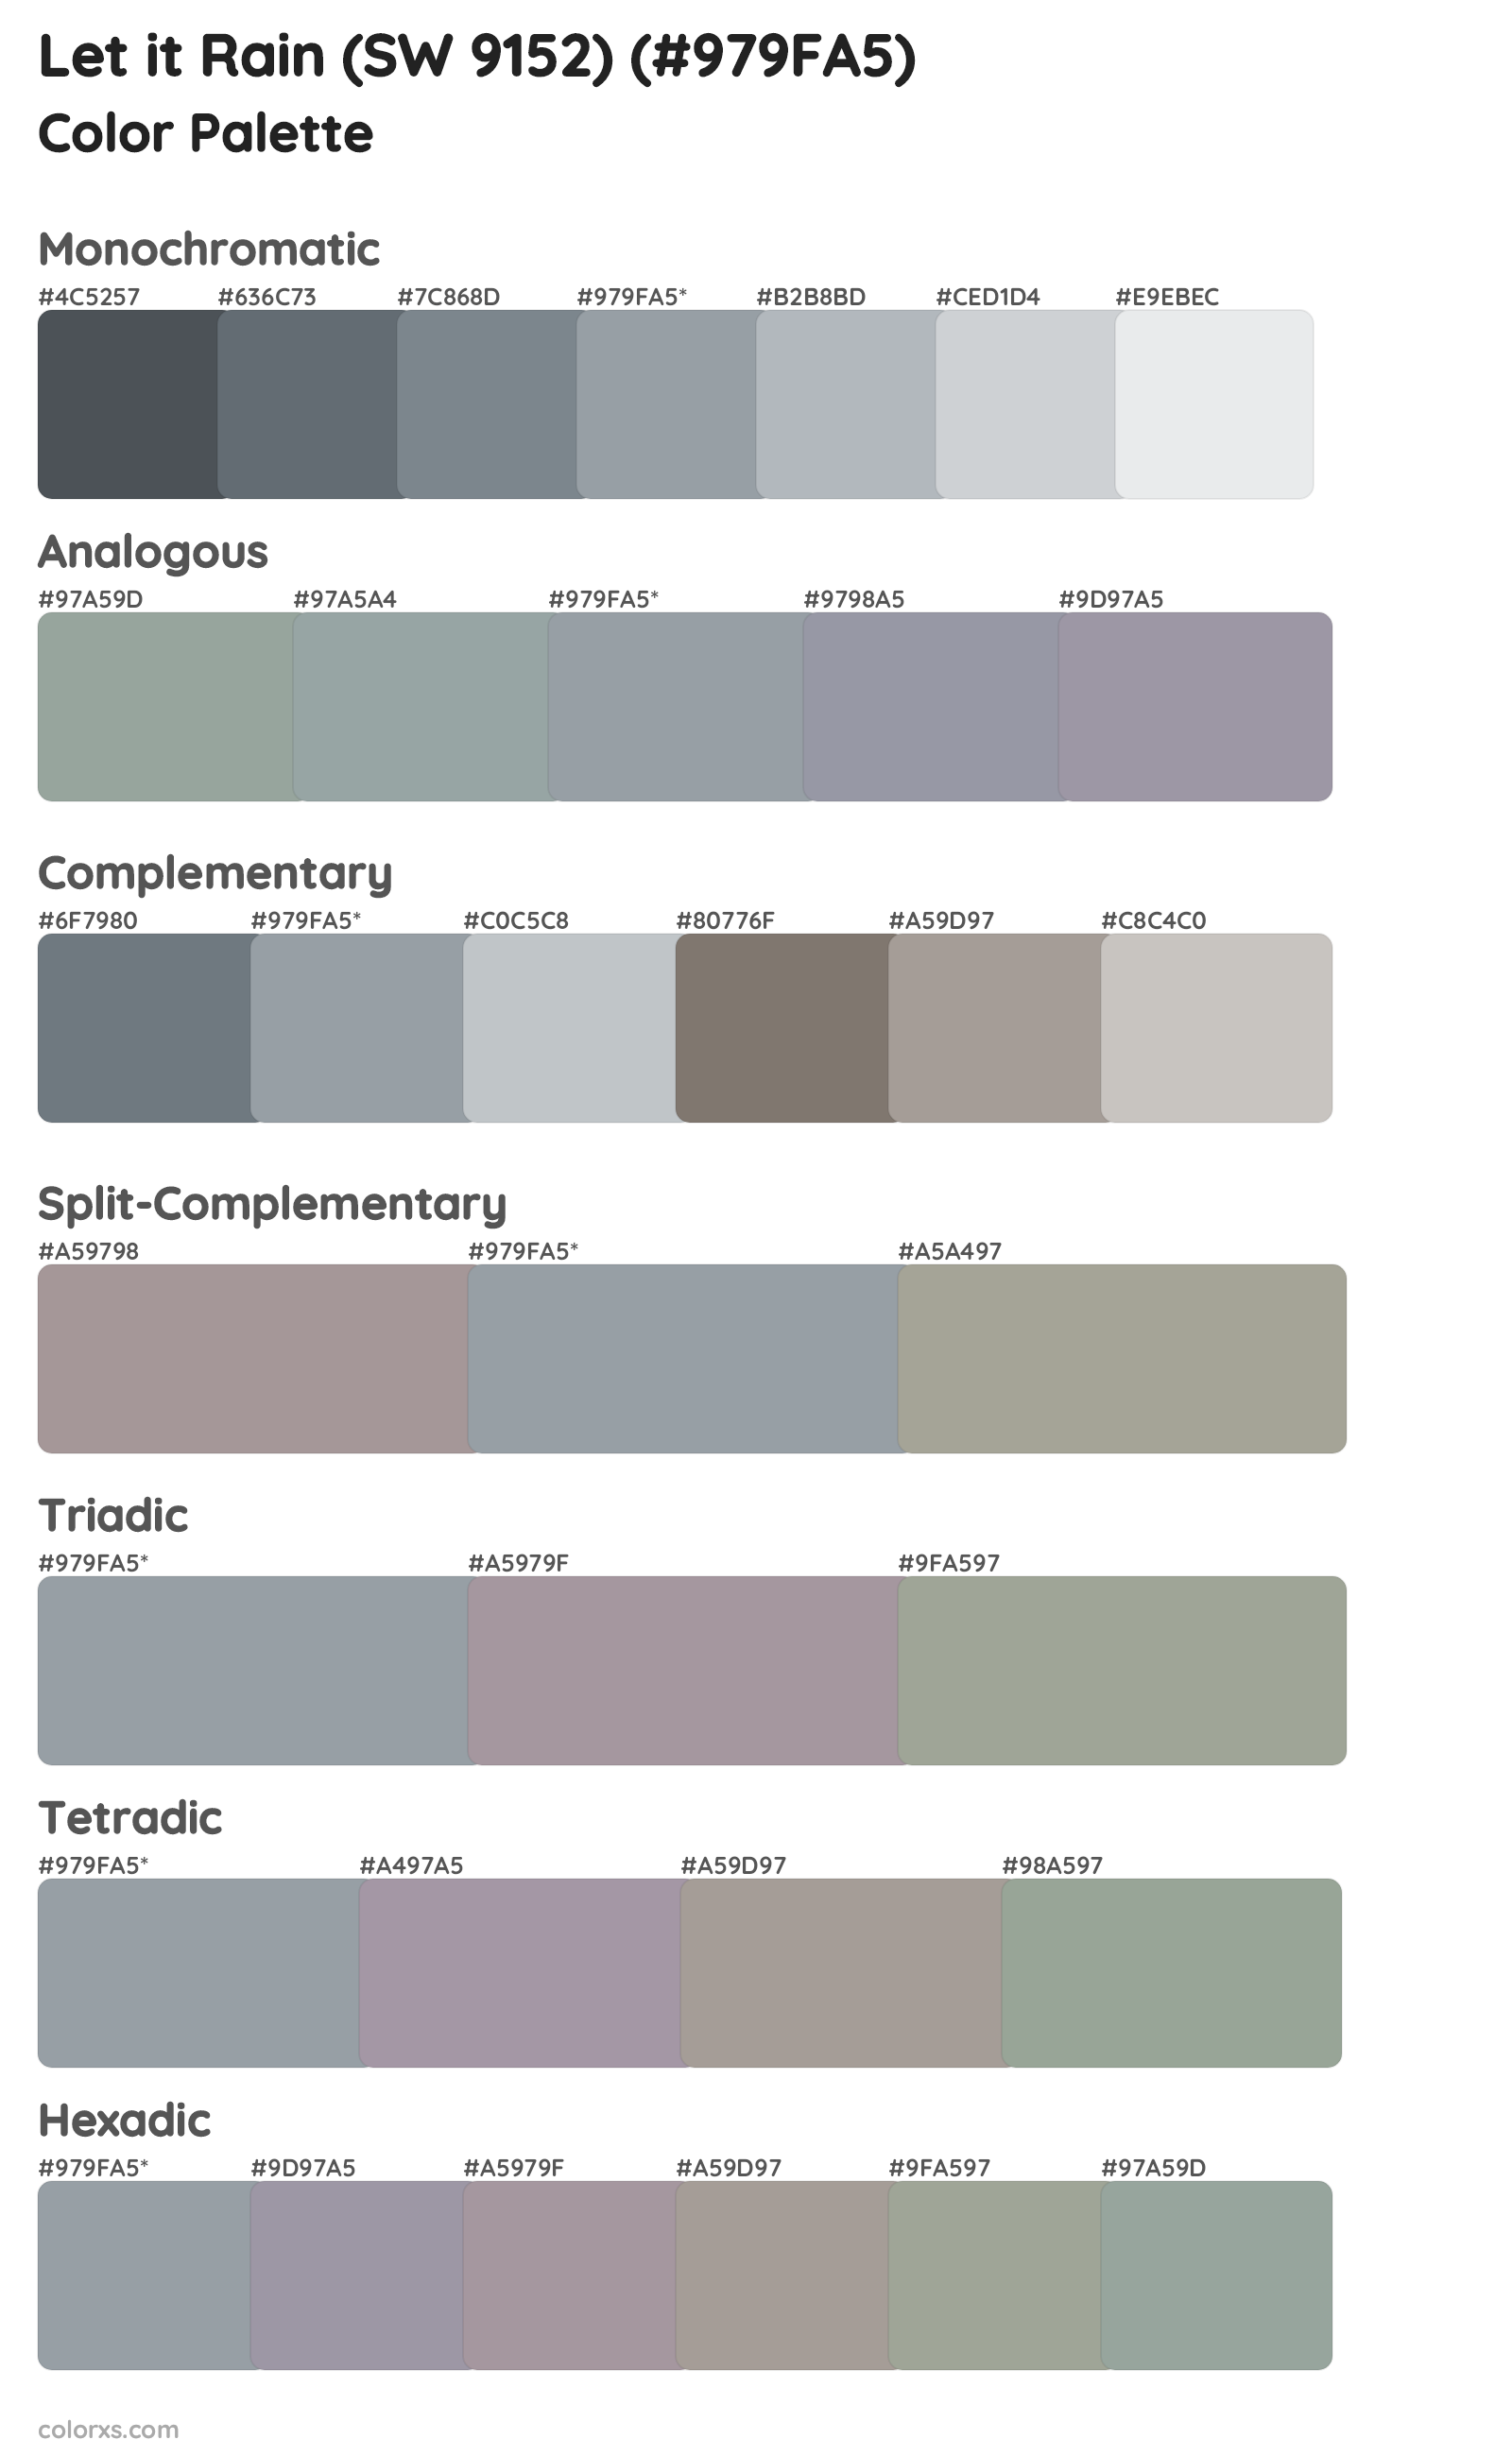 Let it Rain (SW 9152) Color Scheme Palettes